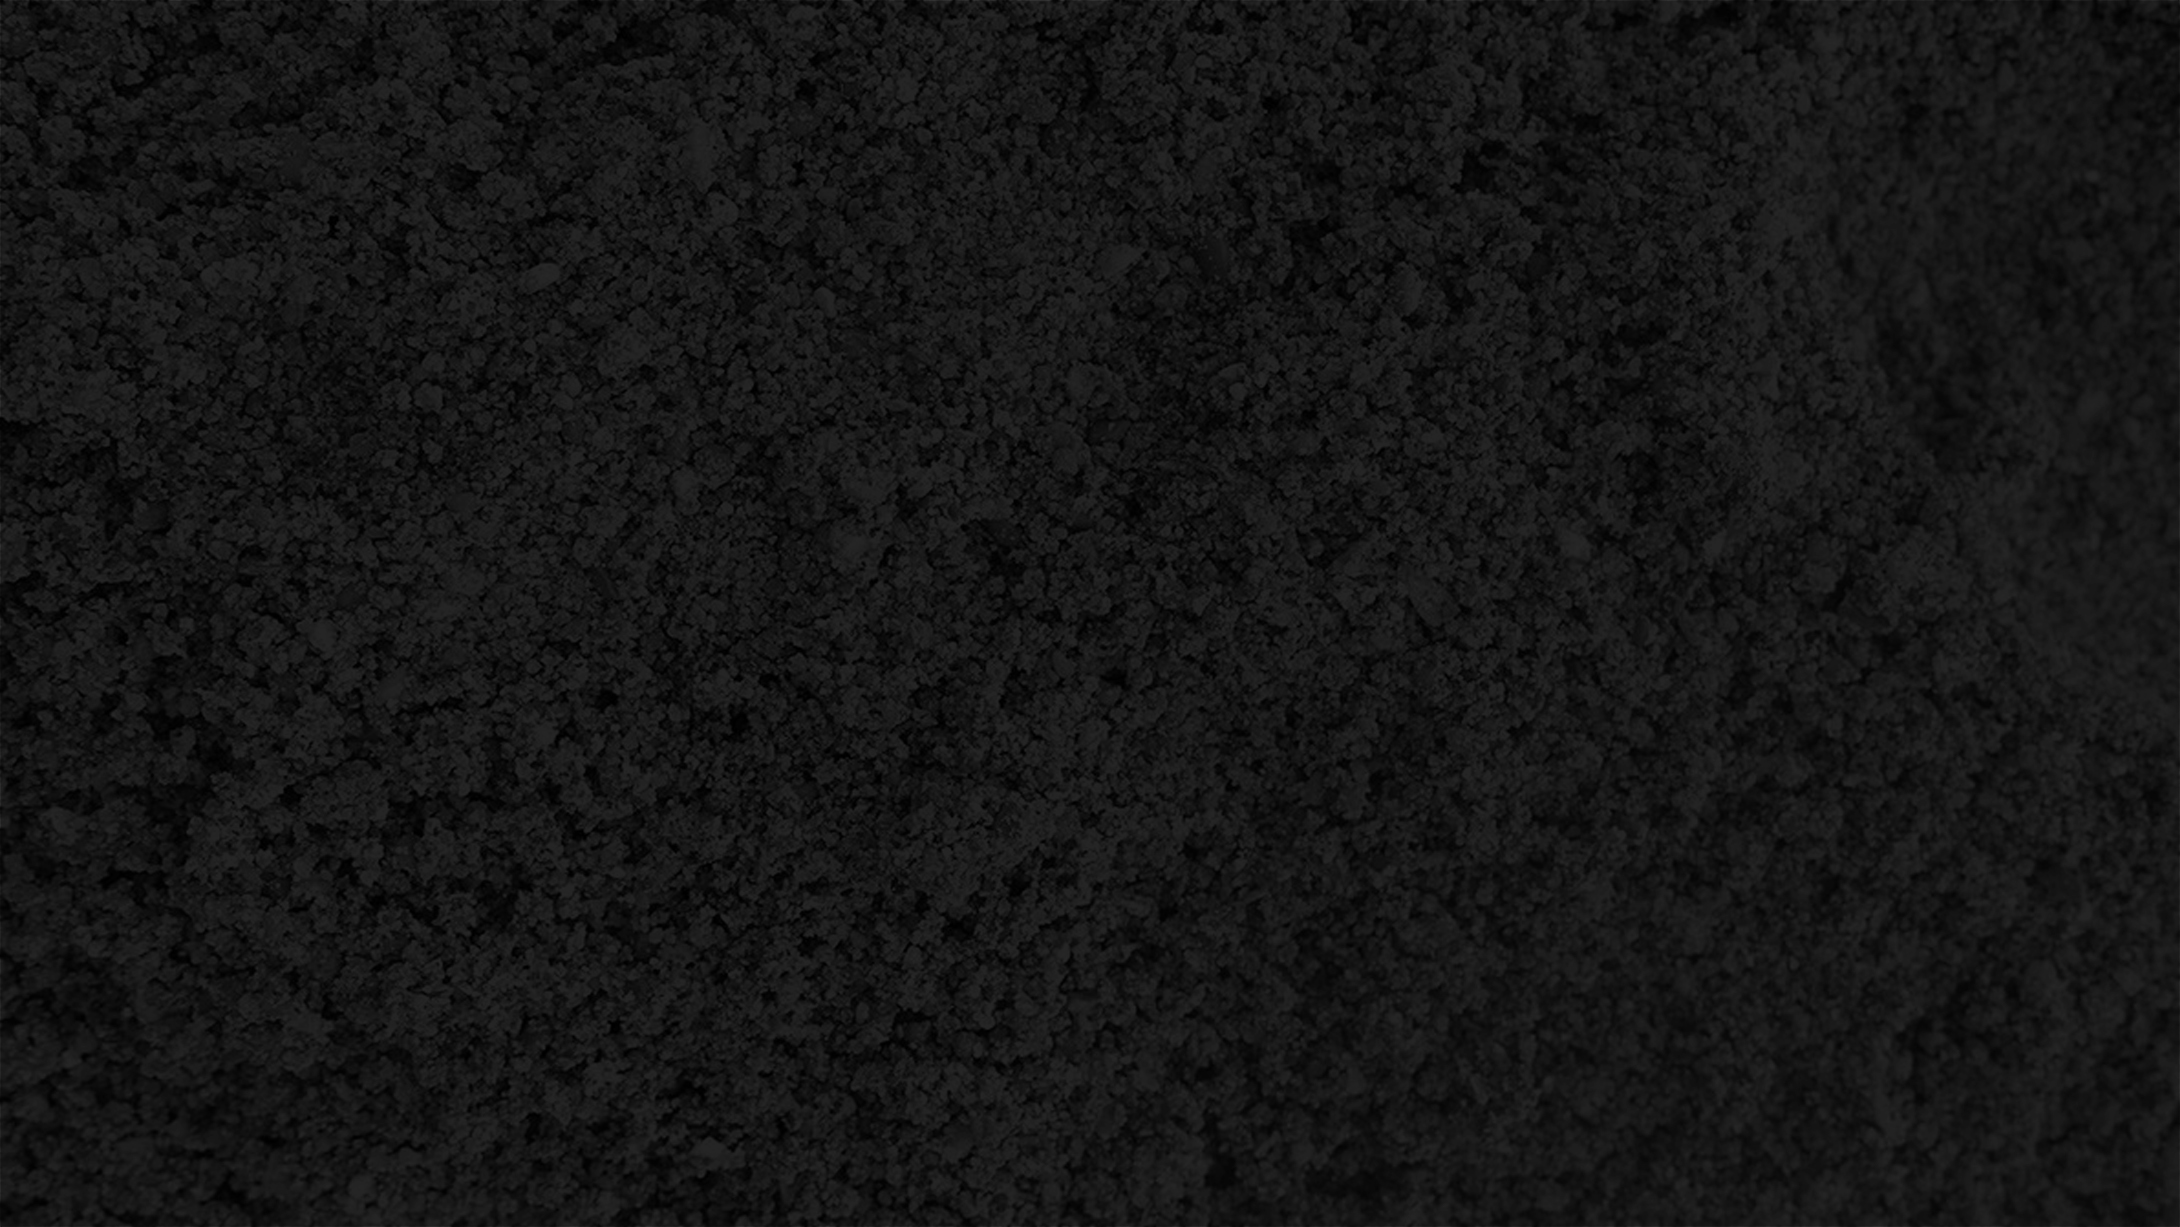 General 2180x1227 dark night texture minimalism